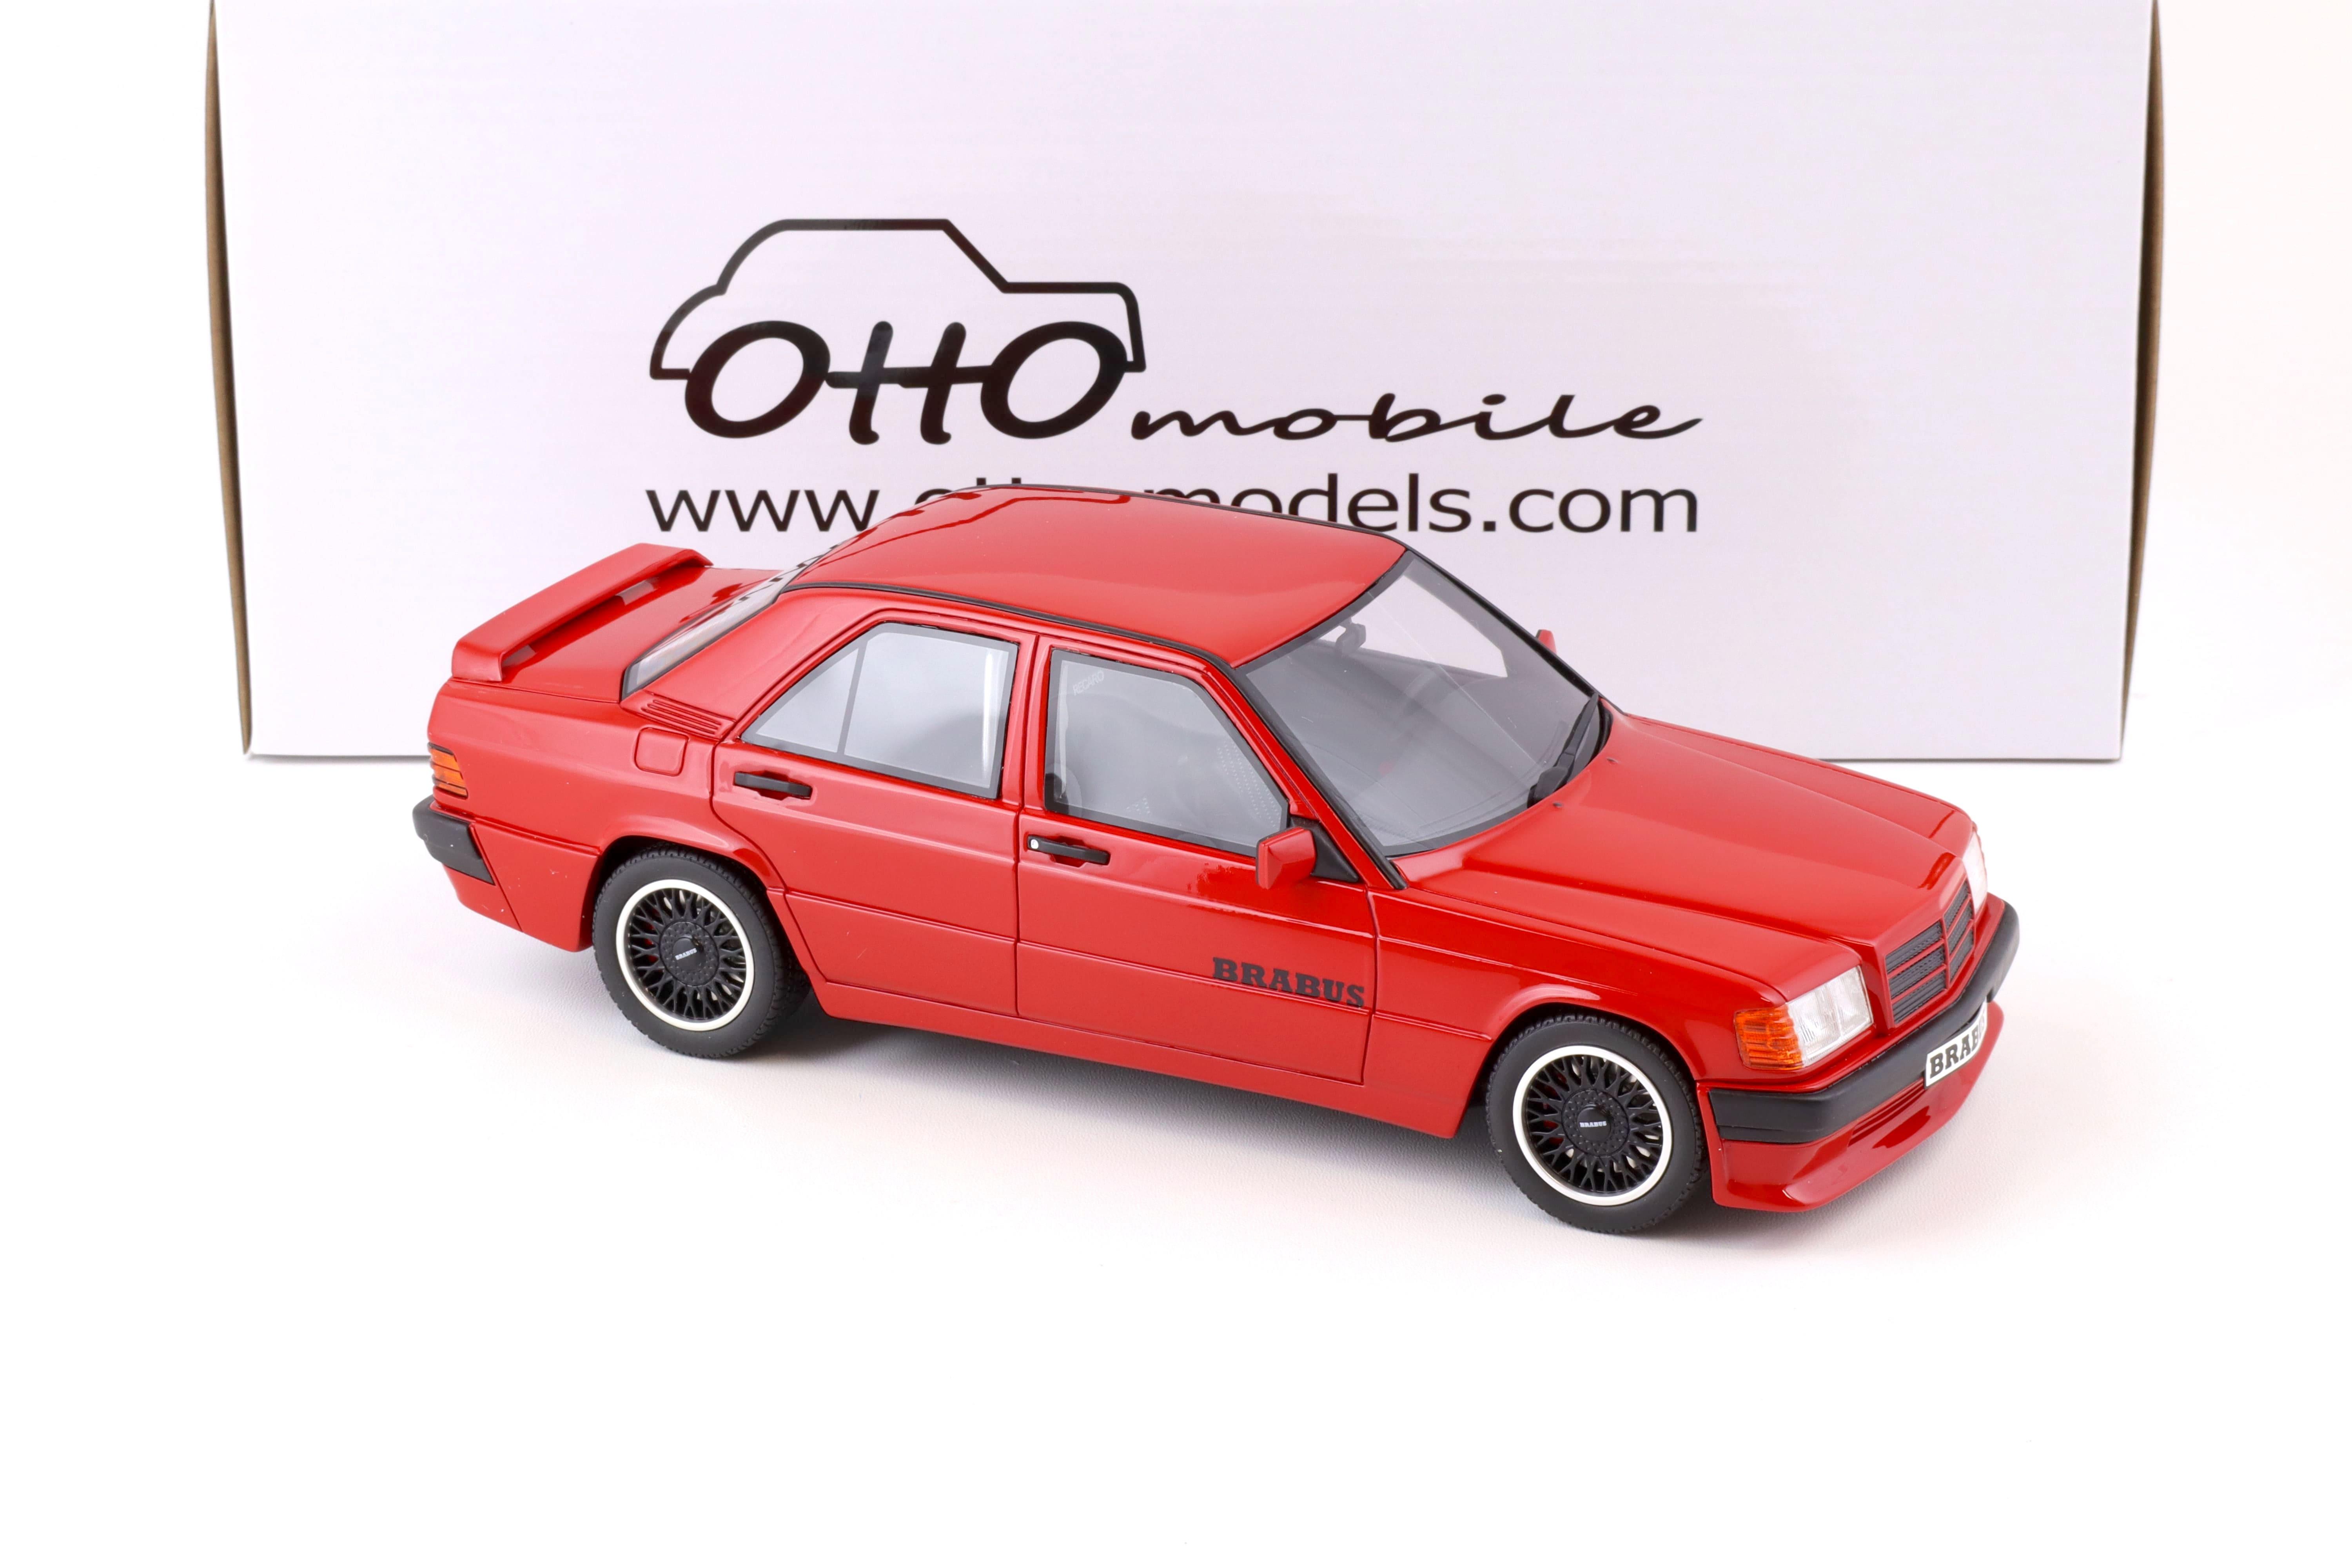 1:18 OTTO mobile OT674 Brabus Mercedes 190E 3.6S W201 red 1989